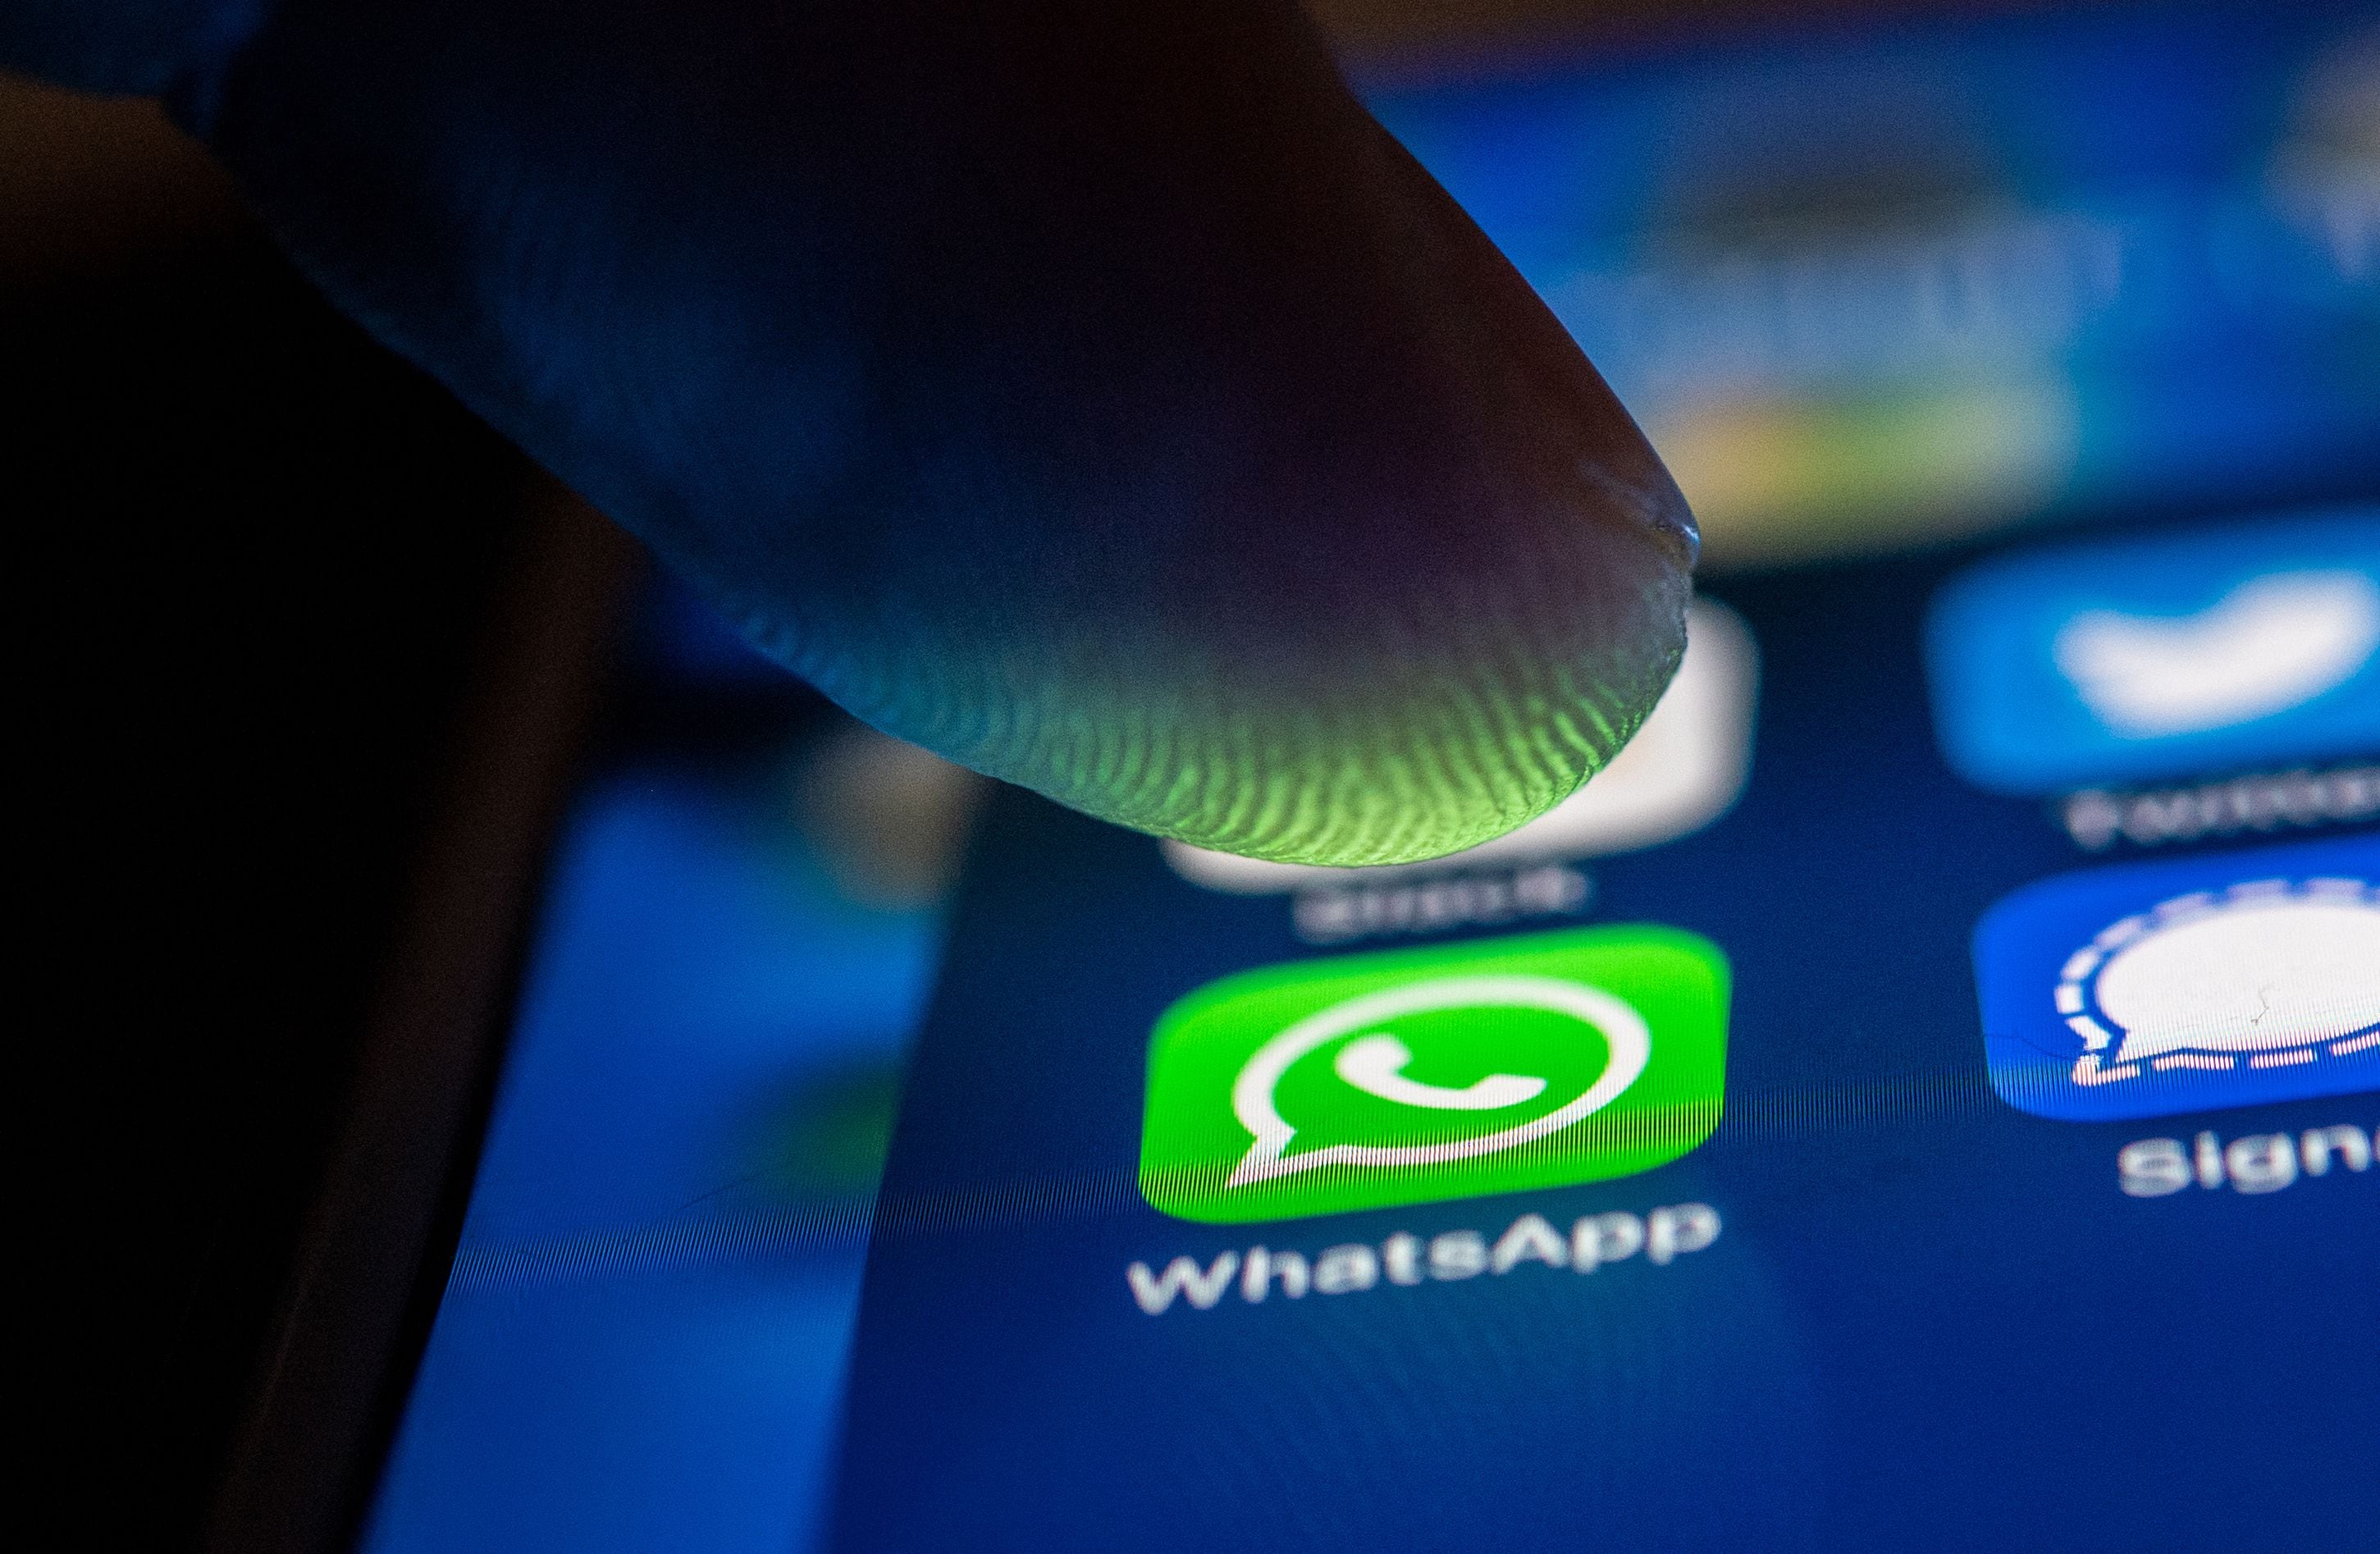 Los celulares Android y iOS que fueron lanzados hace más de 10 años se verán afectados en su acceso a WhatsApp. (dpa)